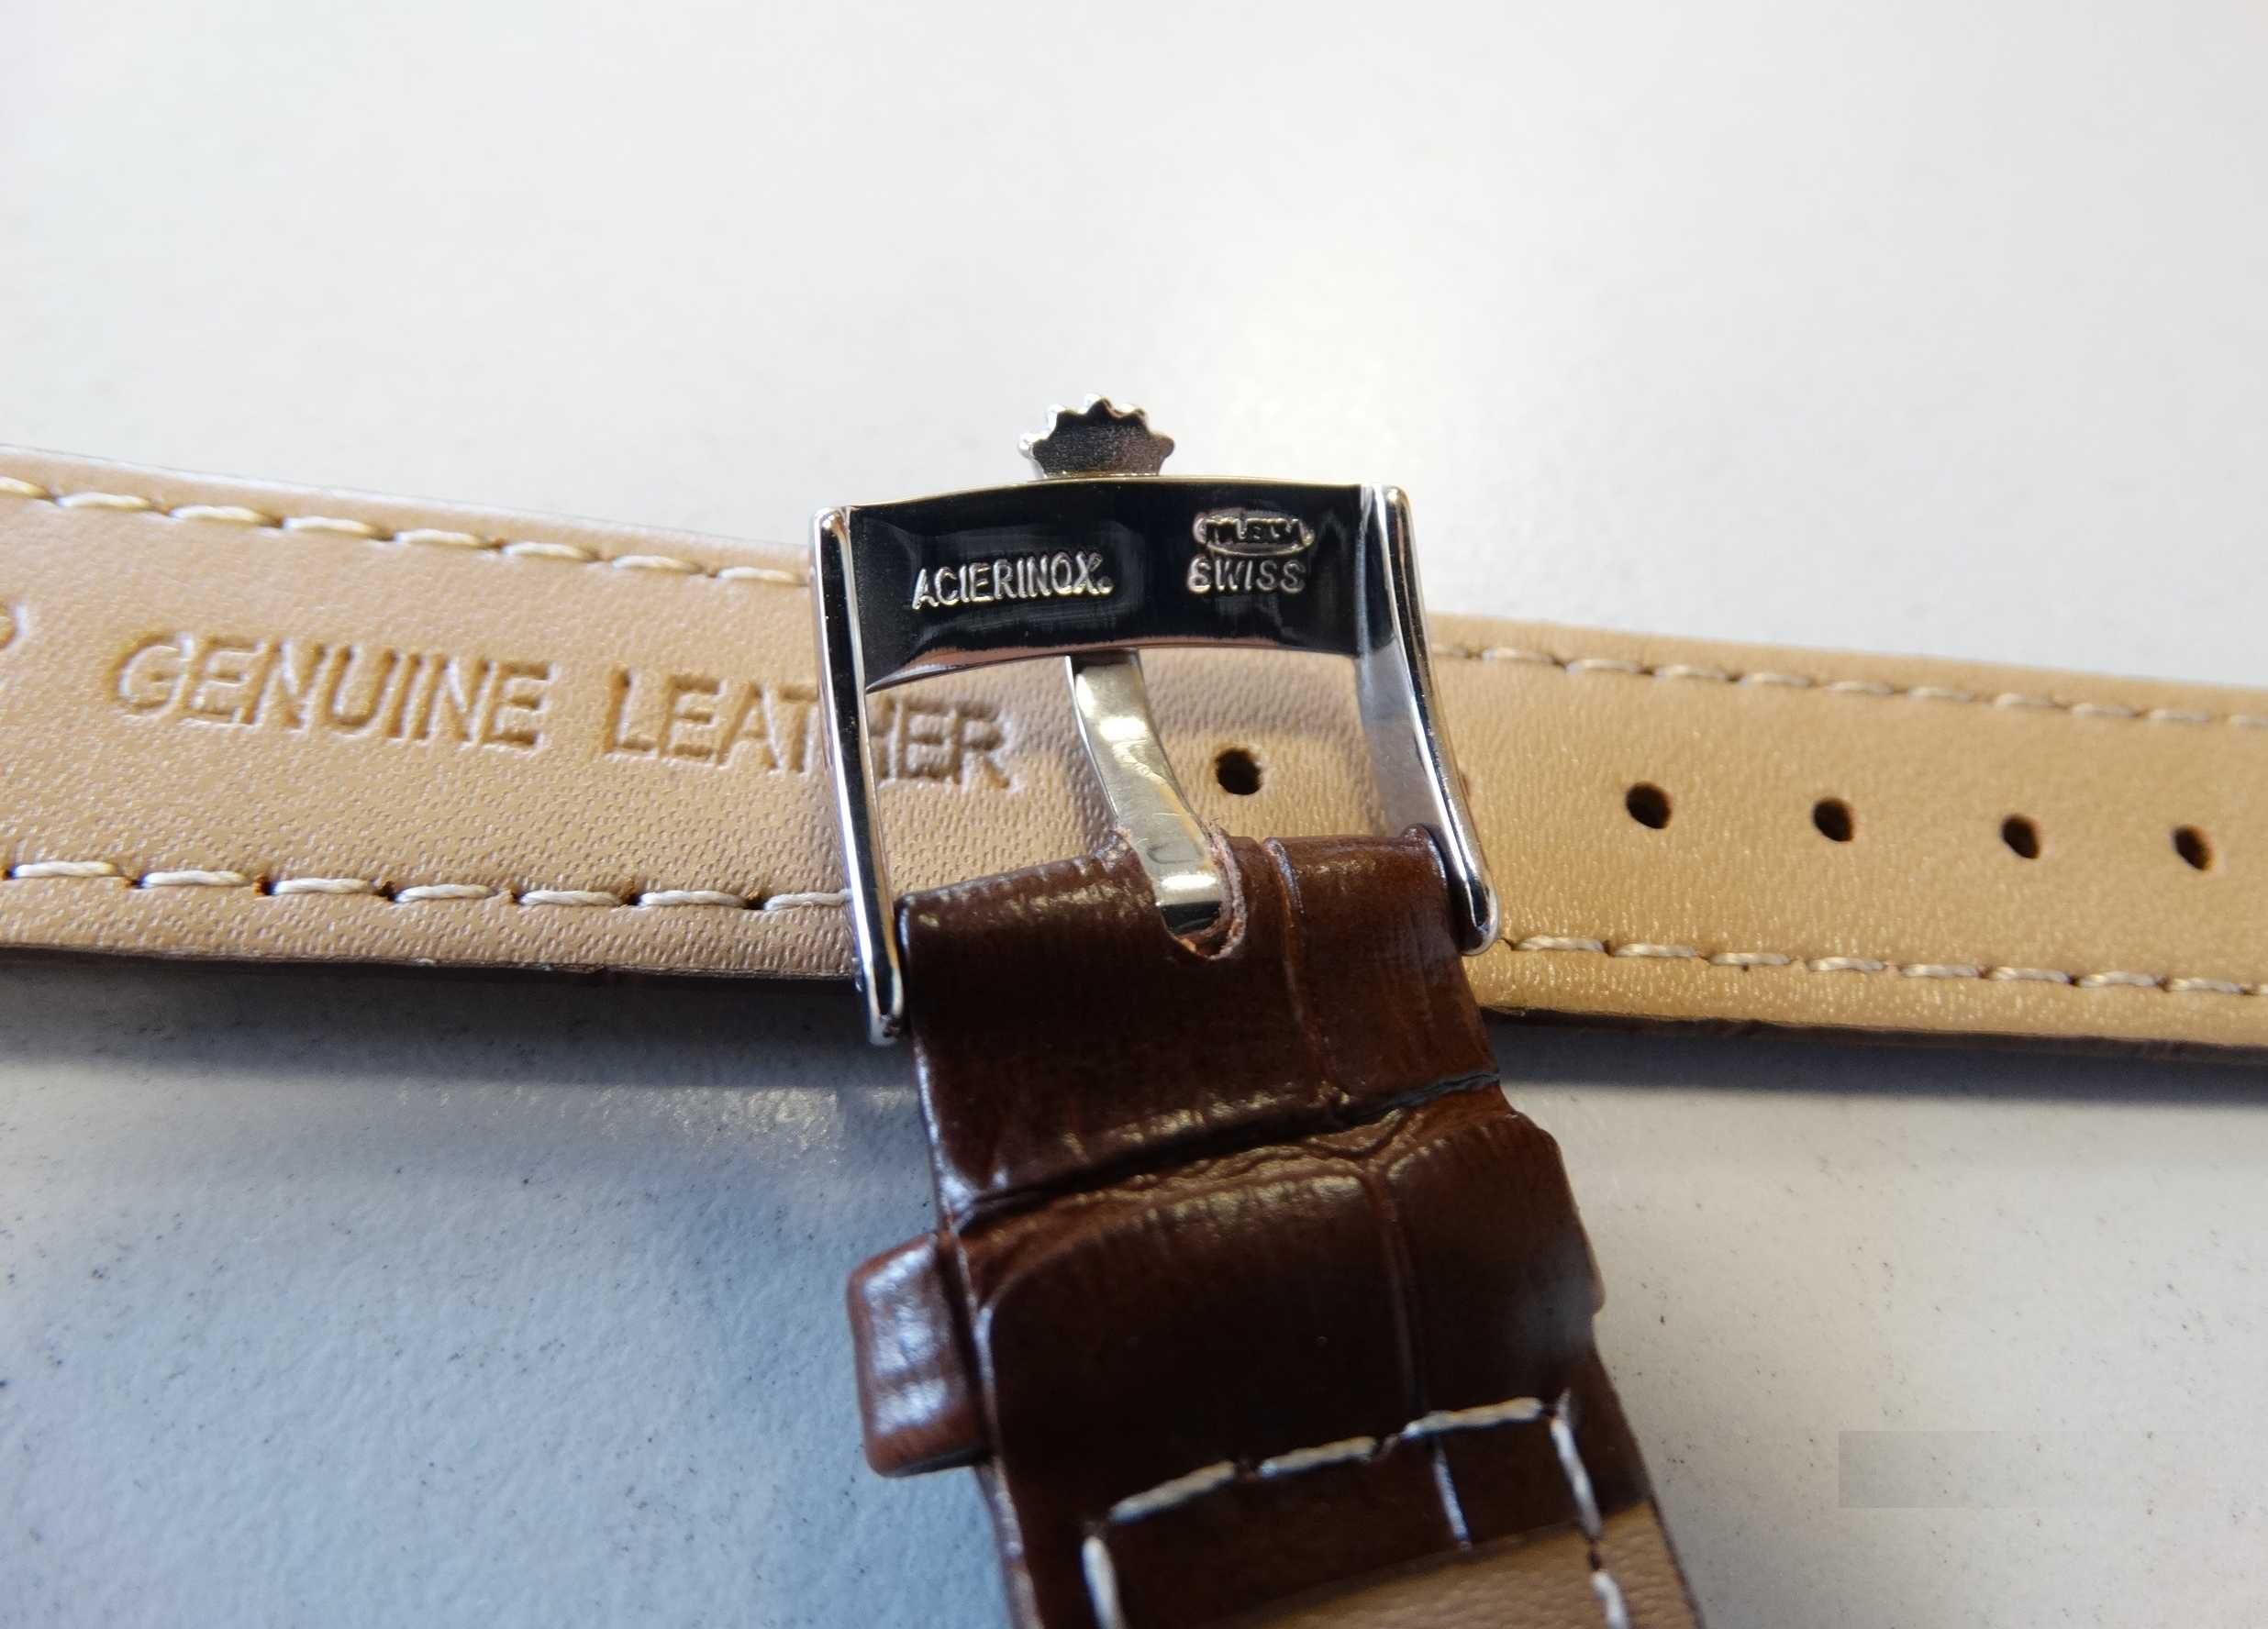 Pasek skórzany 18mm do zegarka Rolex brązowy czarny klamra z logo